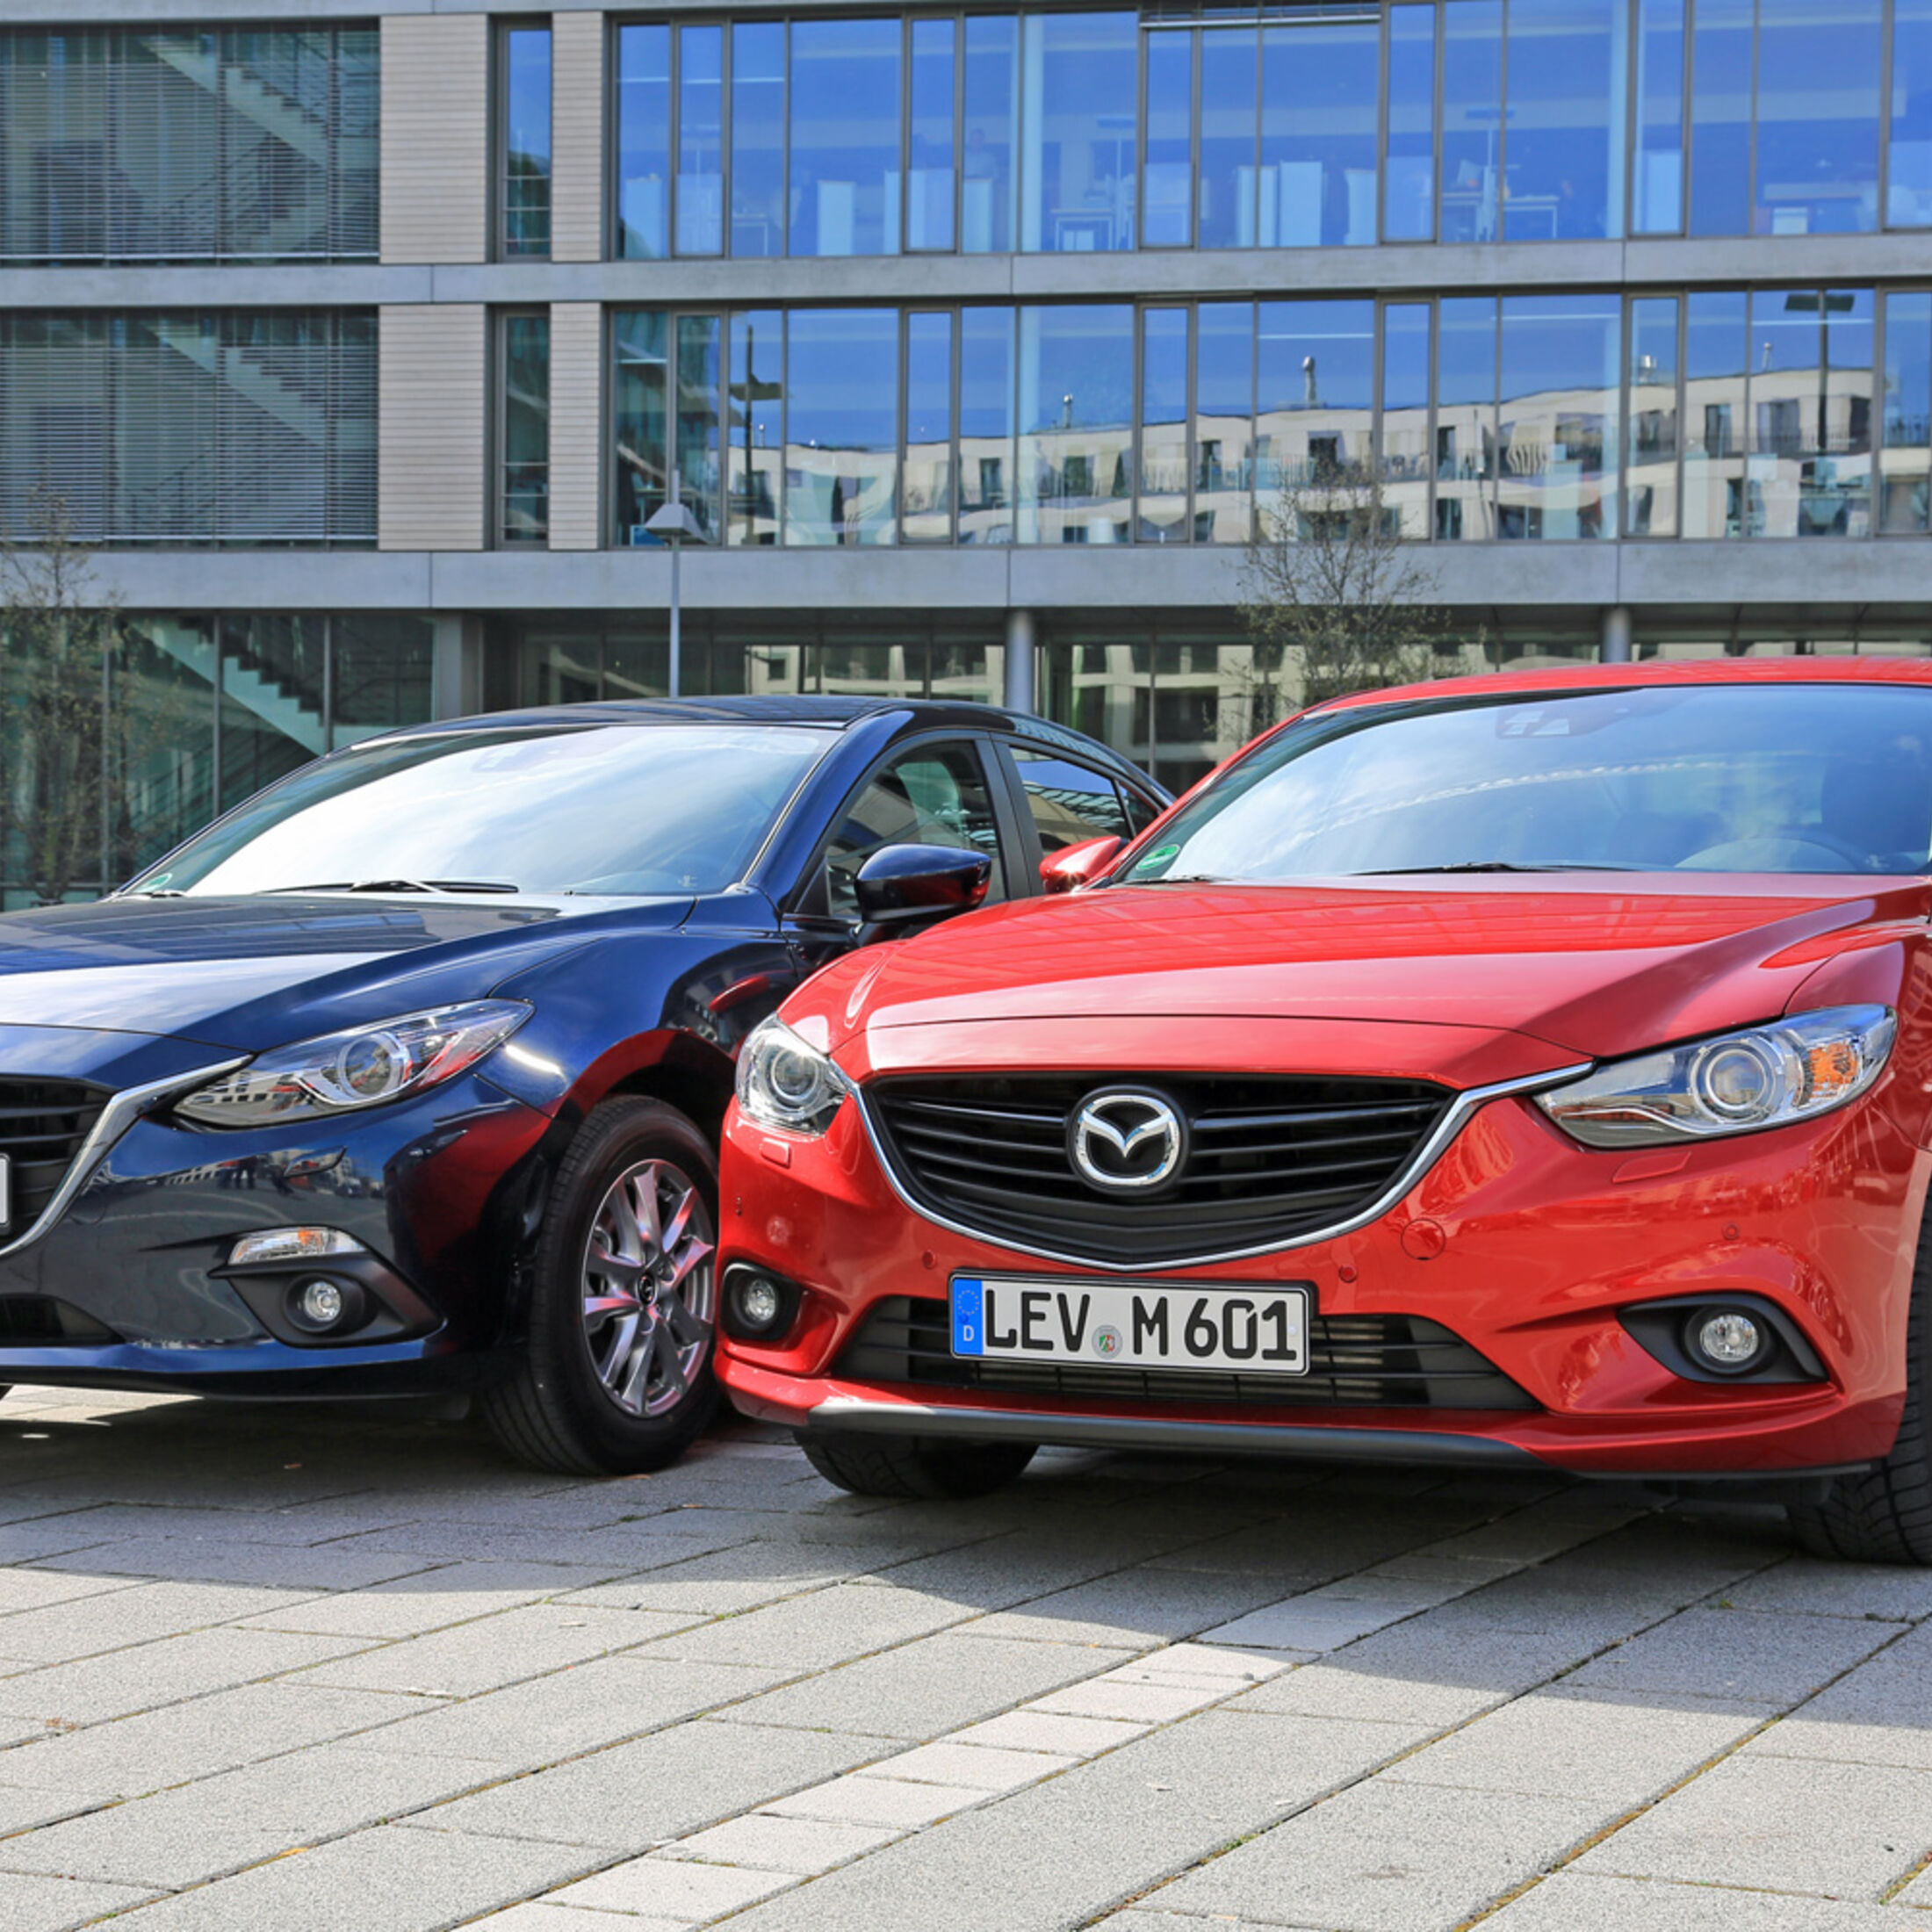 Kaufberatung Mazda 3 oder Mazda 6: Welche Limousine ist die bessere Wahl?